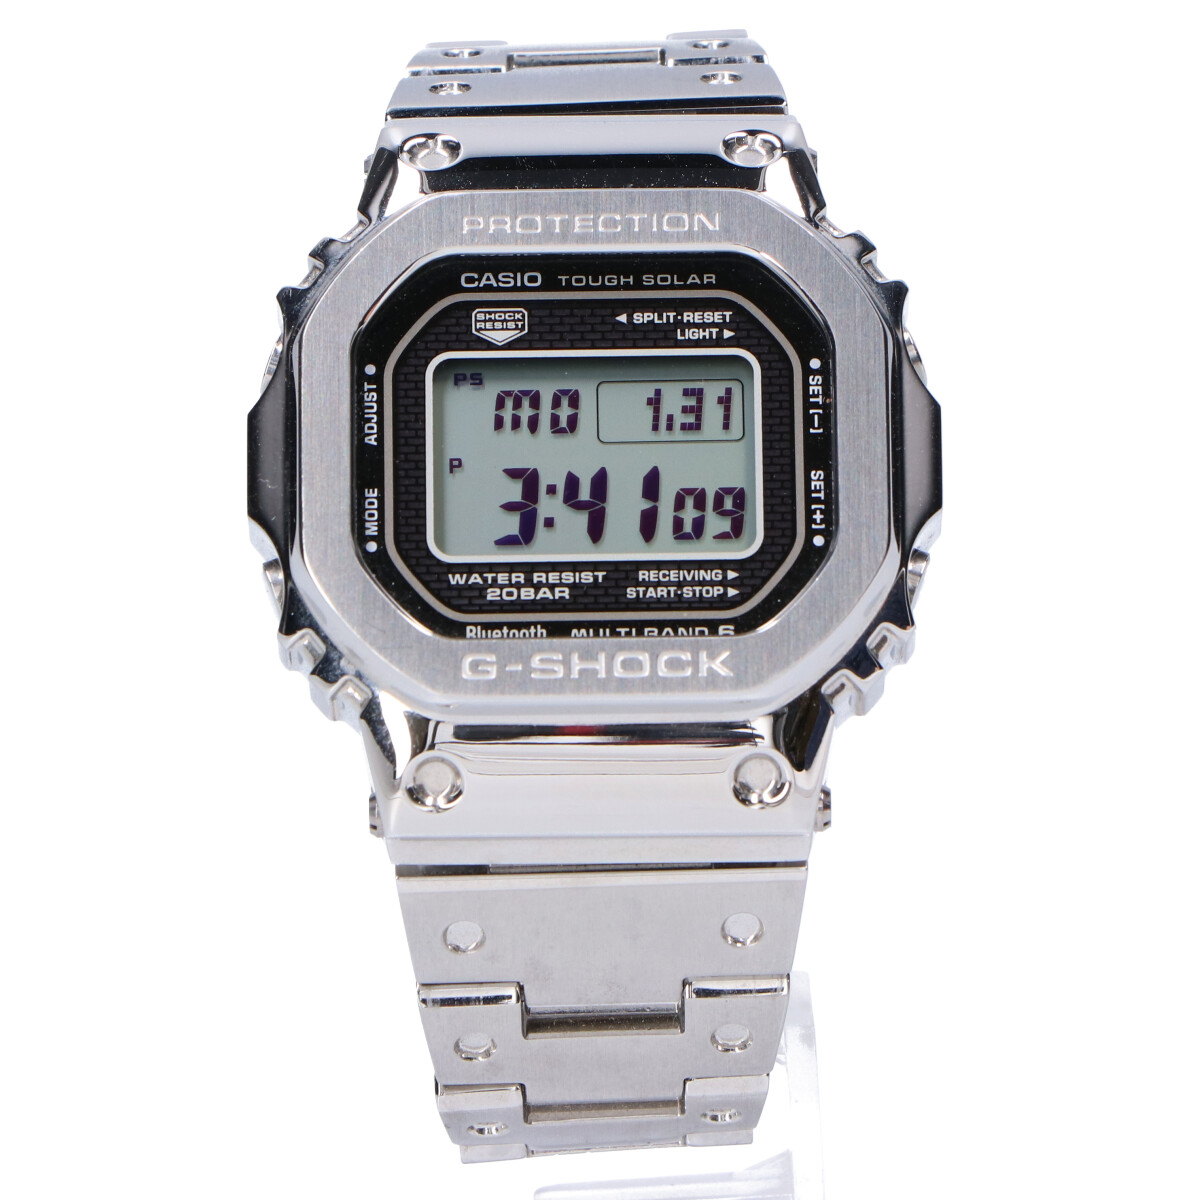 ジーショックのGMW-B5000D-1JF FULL METAL マルチバンド6 タフソーラー電波腕時計の買取実績です。